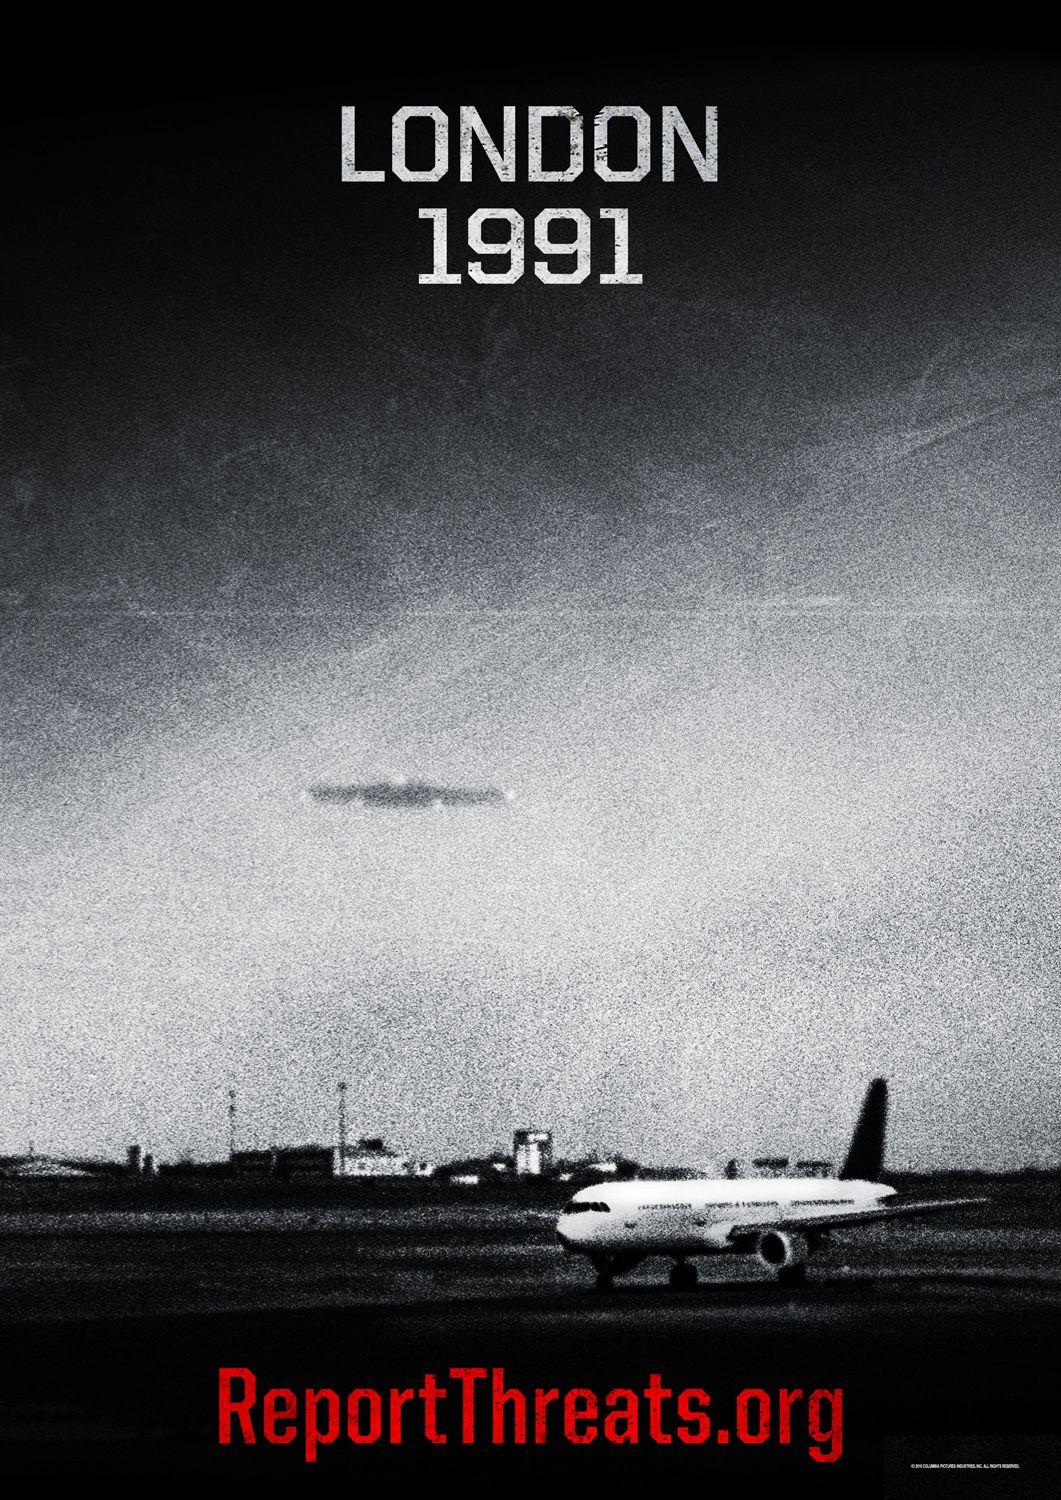 Постер фильма Инопланетное вторжение: Битва за Лос-Анджелес | Battle: Los Angeles